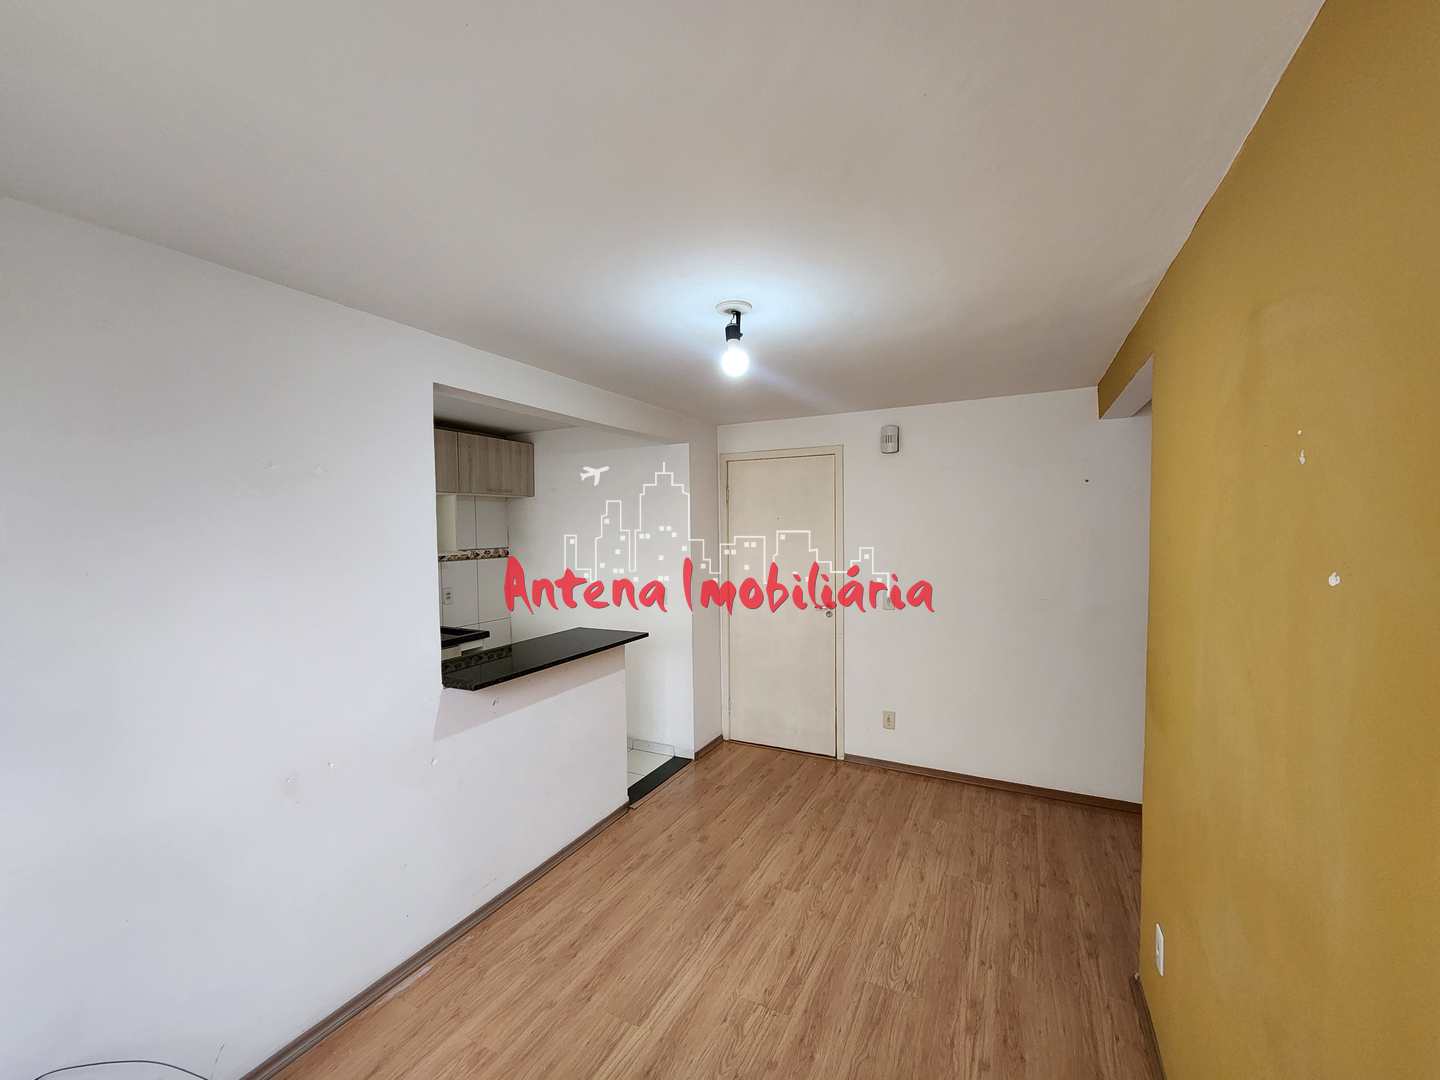 Apartamento, 2 quartos, 45 m² - Foto 4